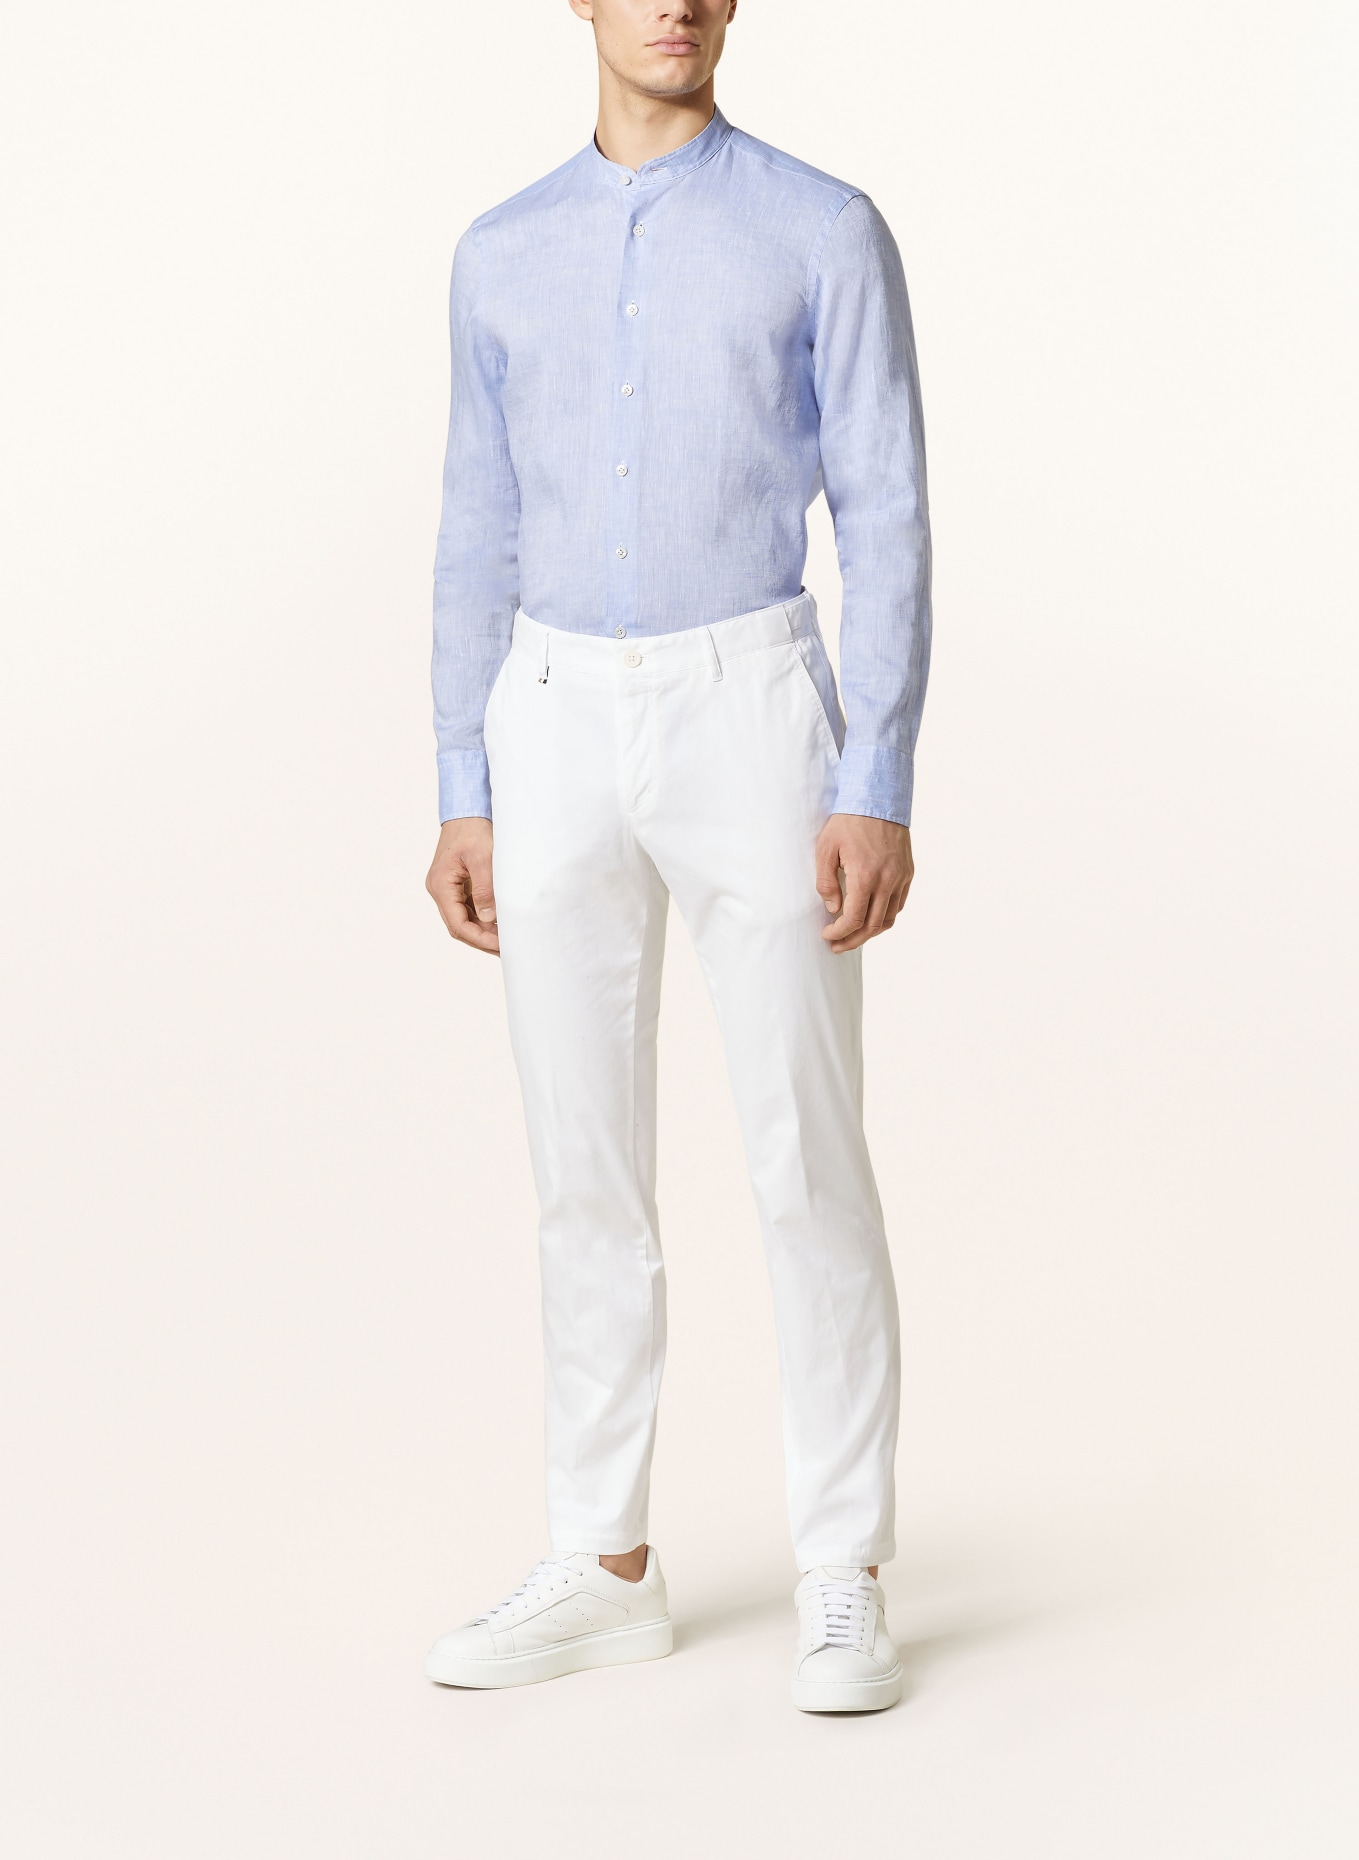 OLYMP SIGNATURE Leinenhemd Tailored Fit mit Stehkragen, Farbe: HELLBLAU (Bild 2)